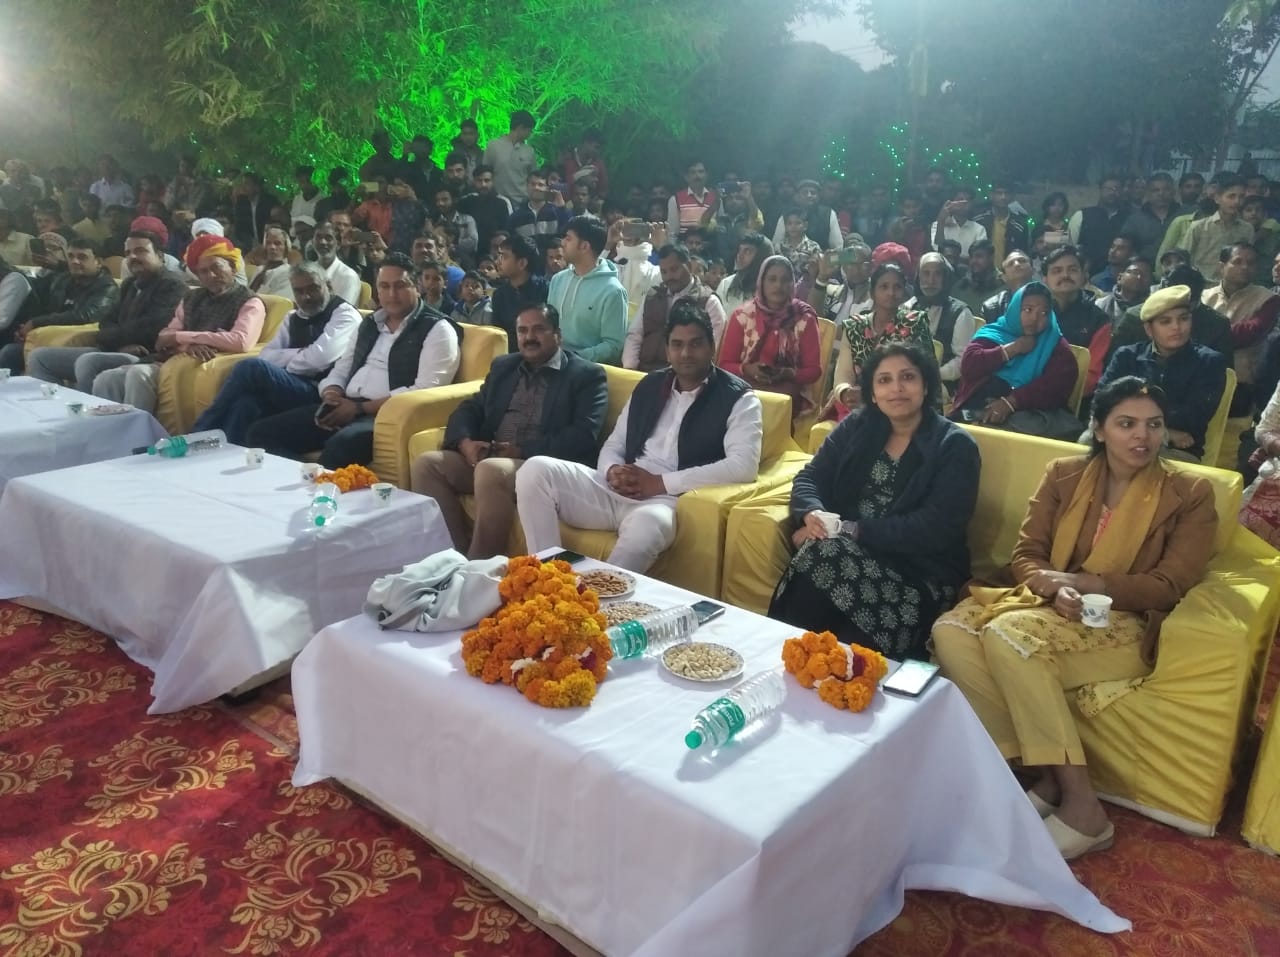 बनास महोत्सव टोंक 2022 के तहत सितार-ए हिंद, शान-ए हिंद पार्टी ने चारबैत कला का प्रदर्शन किया। साथ ही मुशायरा एवं कवि सम्मेलन में महोत्सव में समां बांध दिया